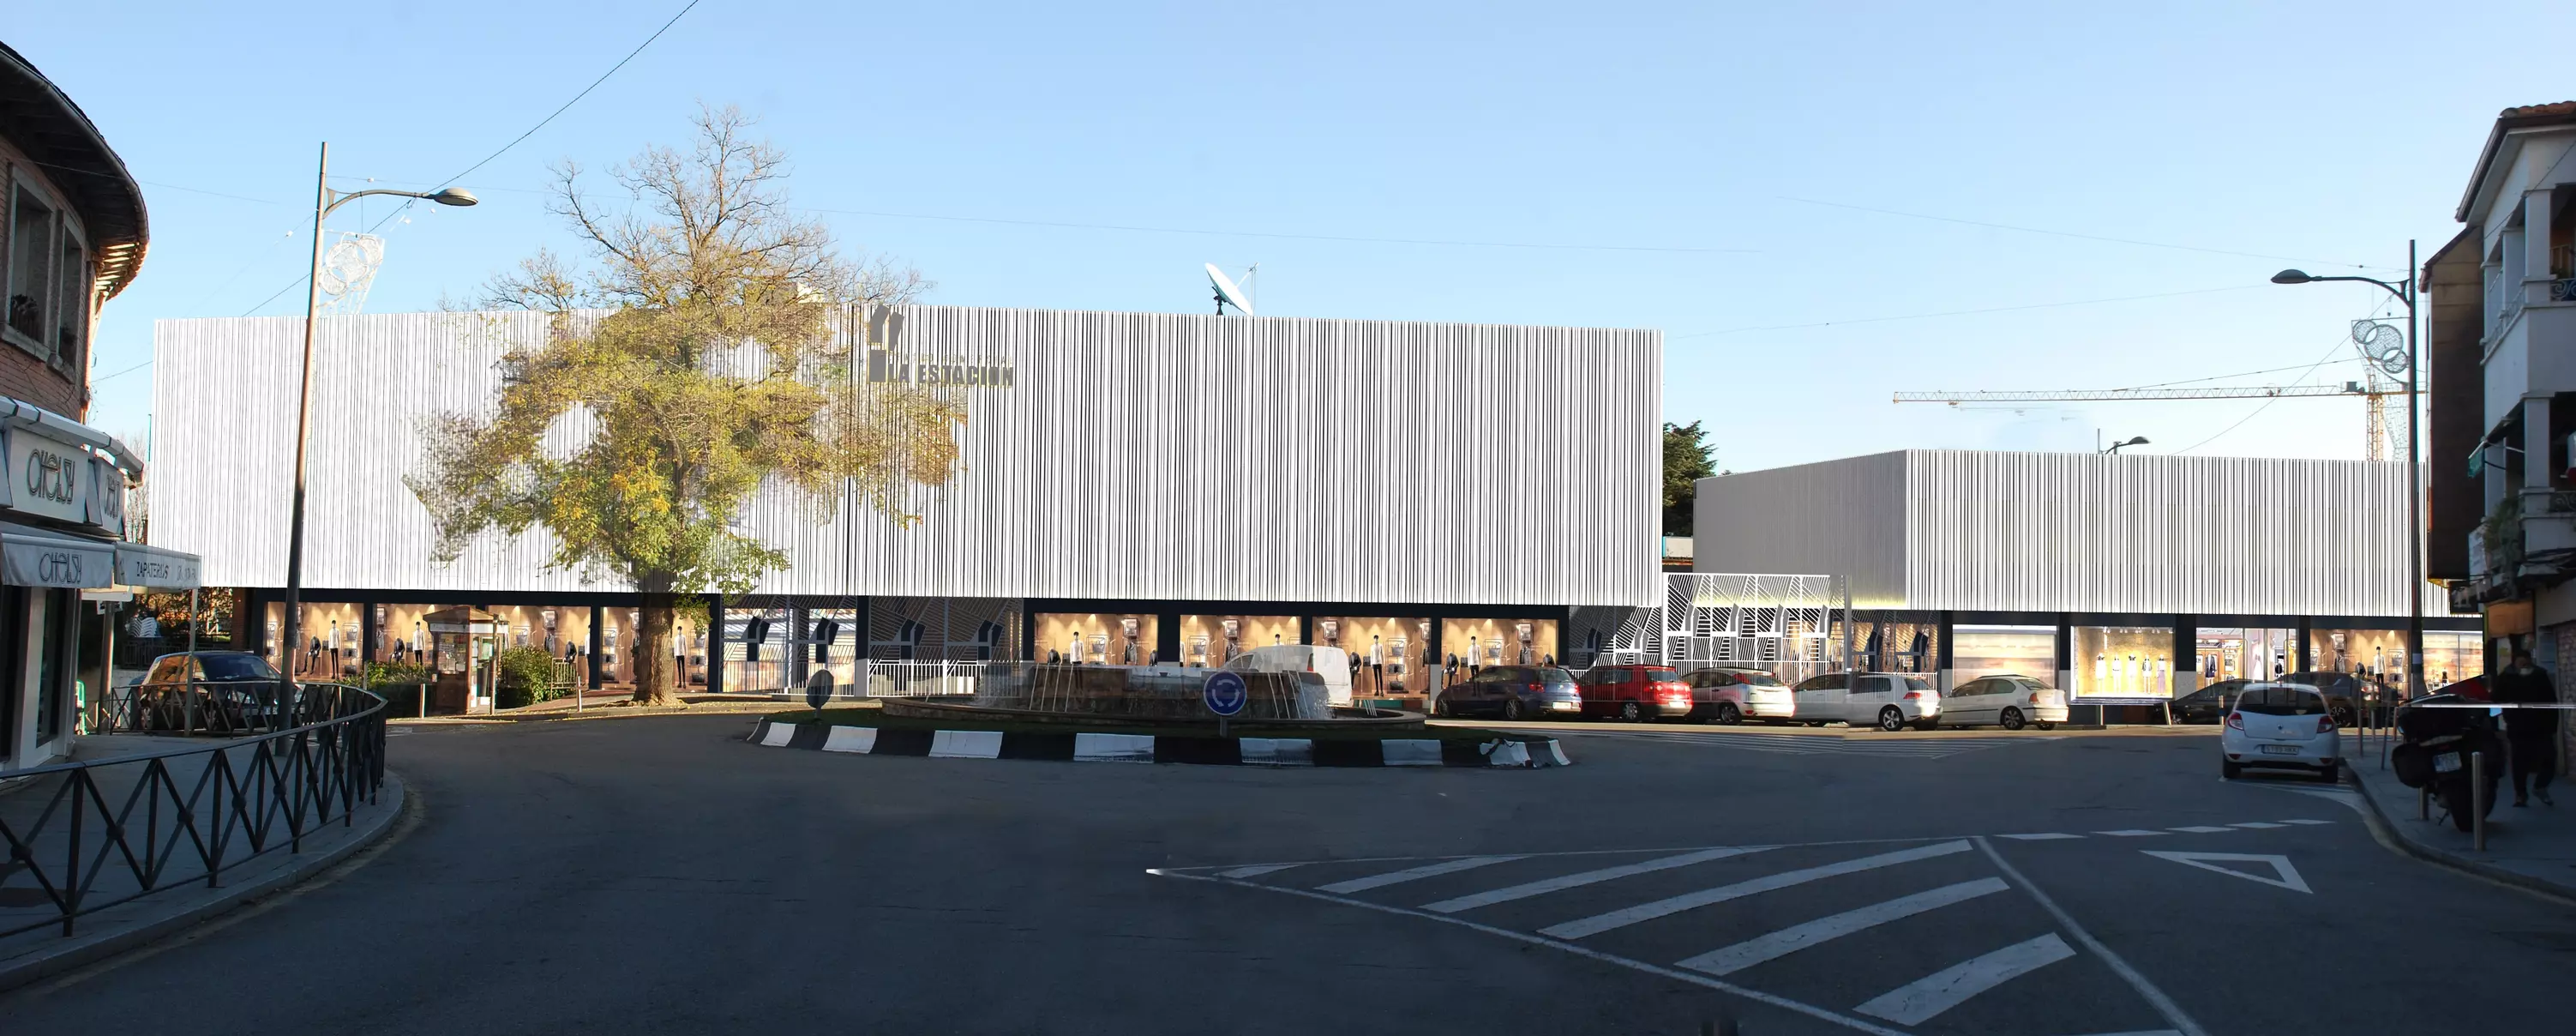 El futuro Centro Comercial La Estación de Pozuelo contará con nuevos restaurantes, tiendas gourmet y de ocio, gimnasio y oficinas